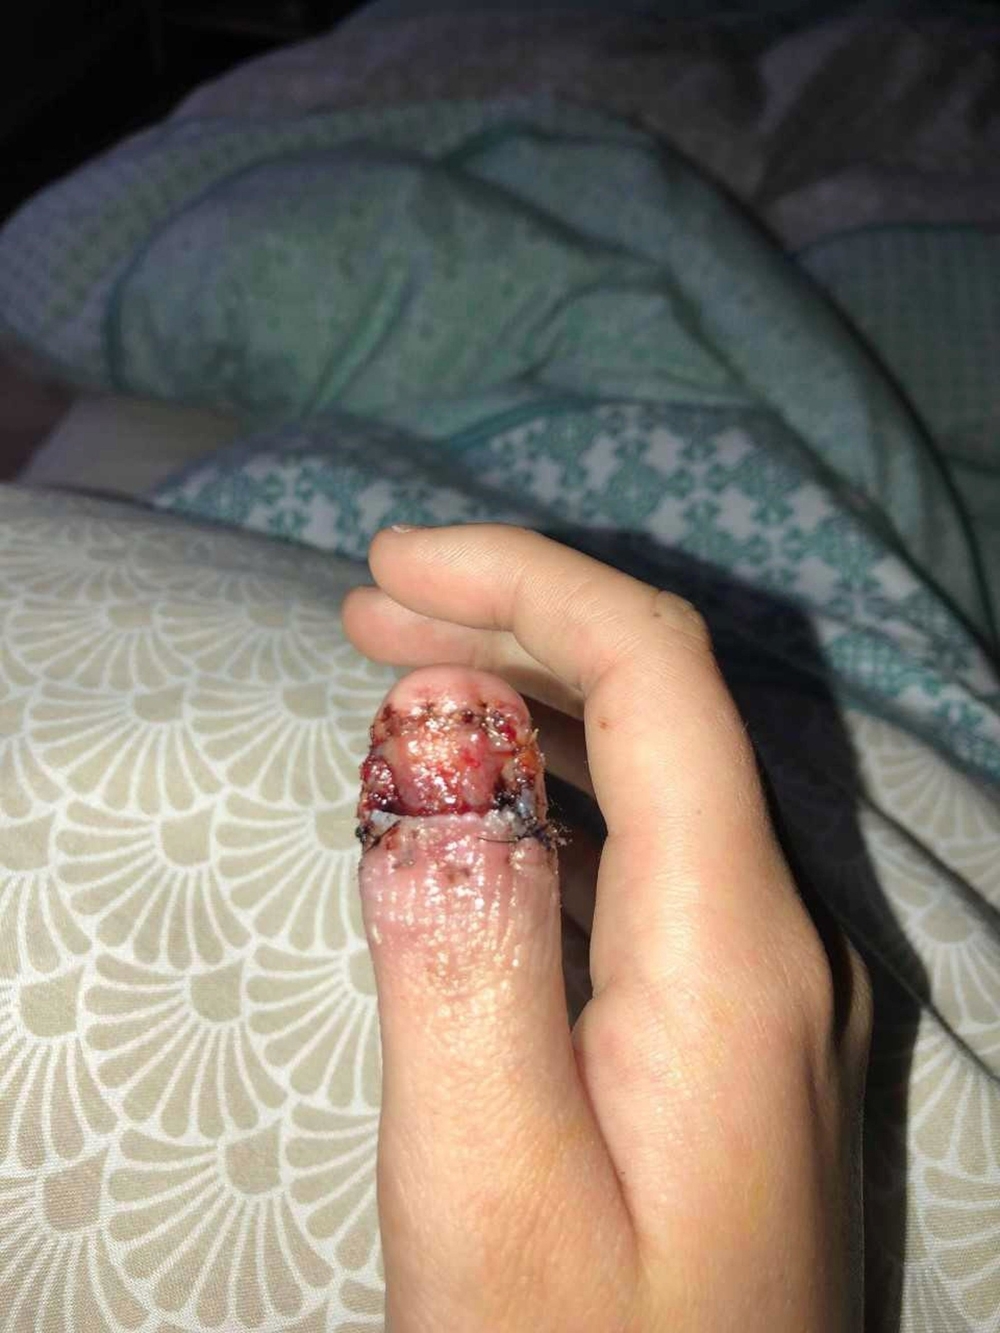 
Ngón tay bị nhiễm trùng cấp độ nặng của Courtney Whithorn